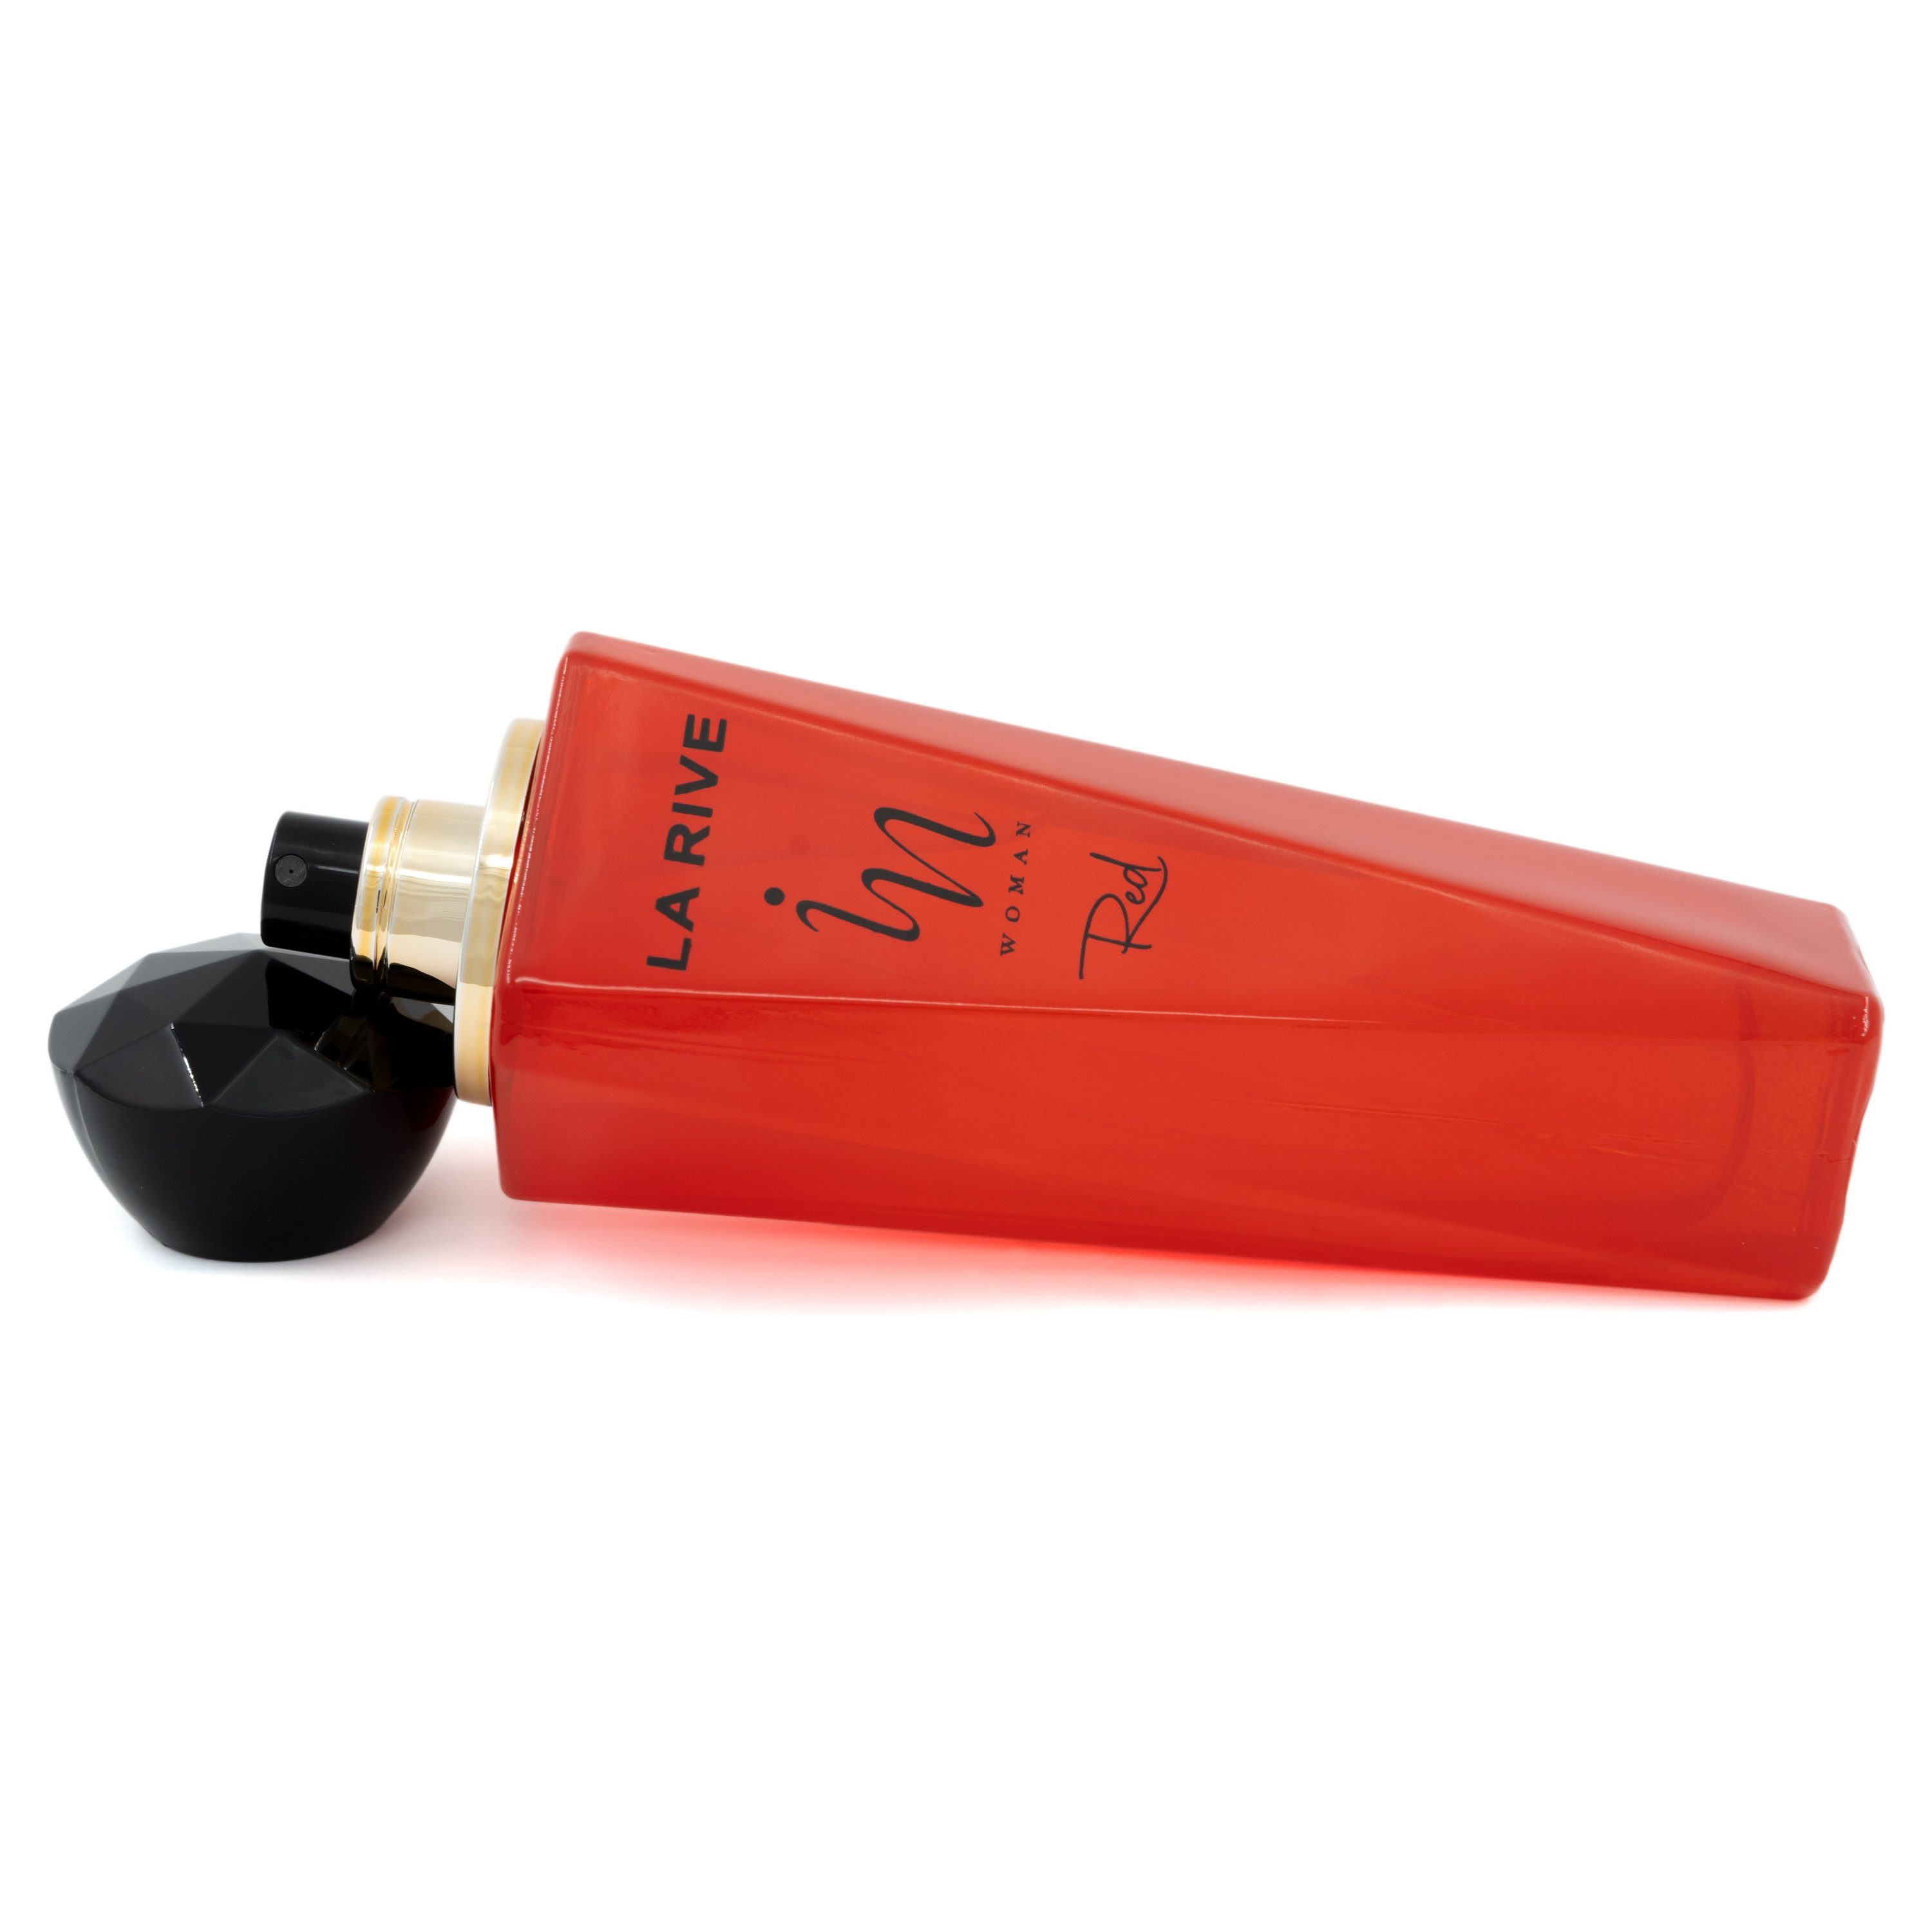 La Rive Eau de Parfum In de Parfum ml - RIVE LA Eau - Woman Red 100